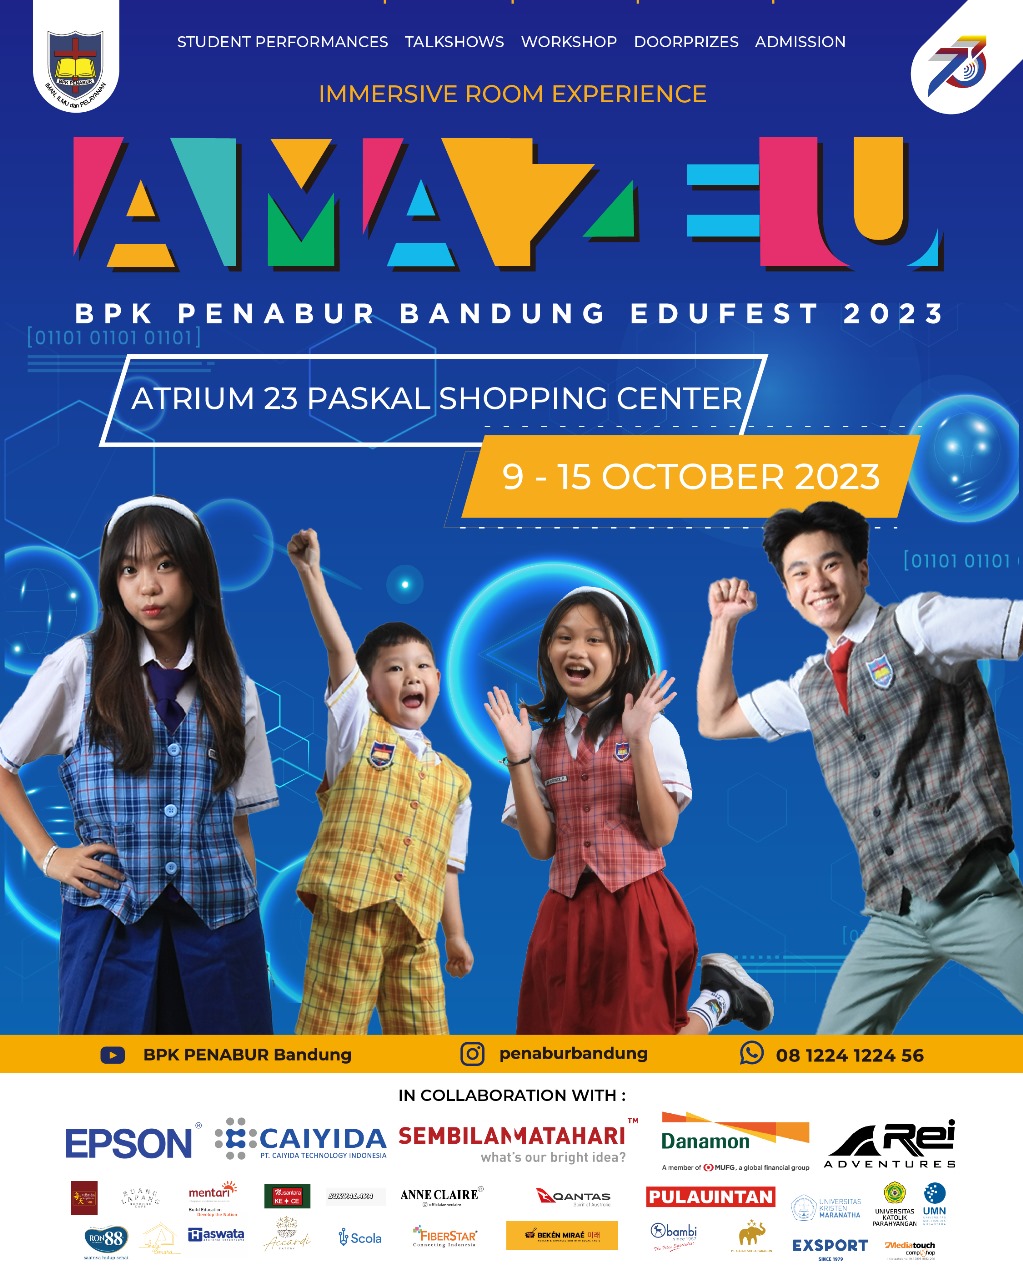 ✨ AMAZE U ✨ BPK PENABUR Bandung EDUFEST 2023